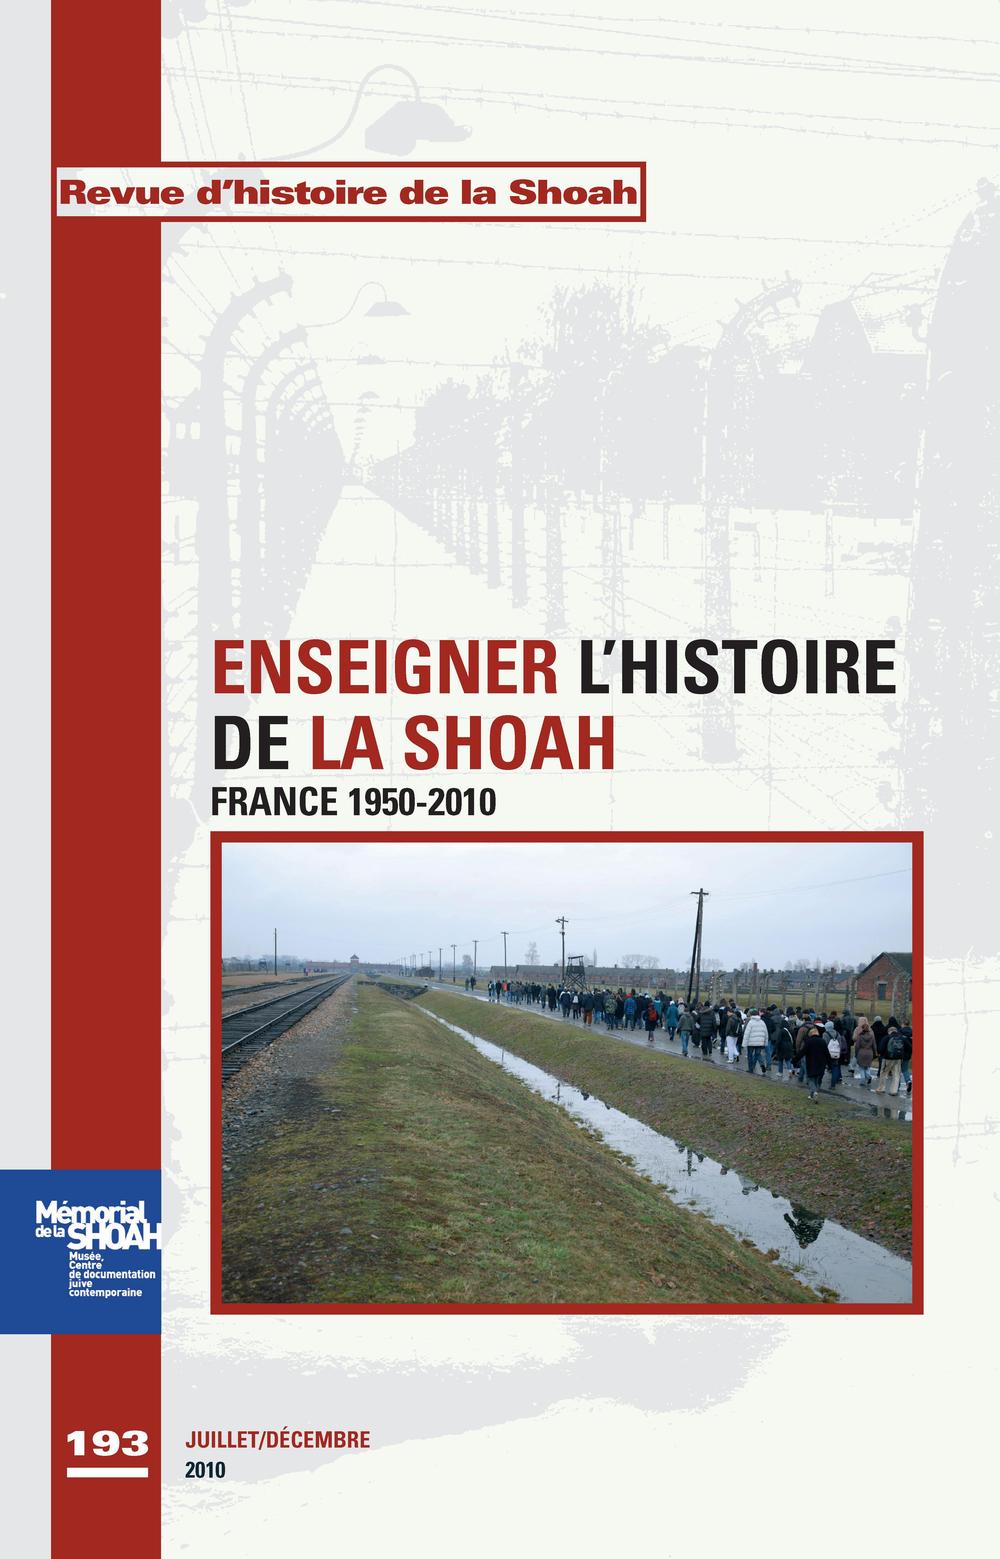 Une image de la couverture de la Revue dhistoire de la Shoah, avec le titre Enseigner lhistoire de la Shoah, France 1950-2010.